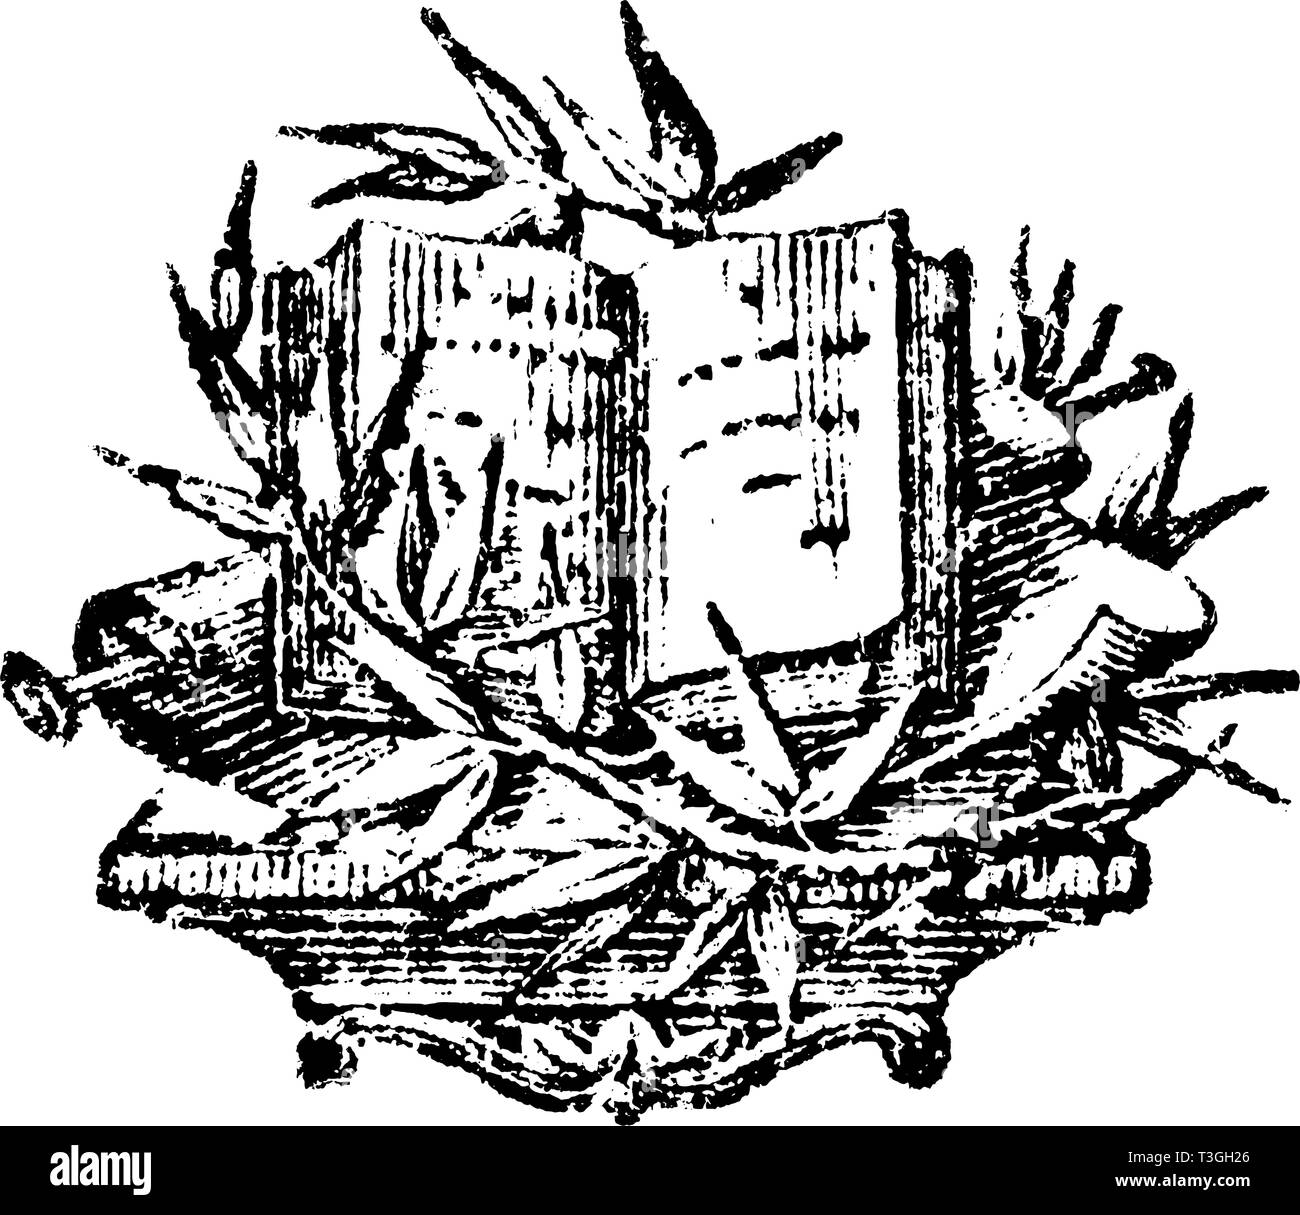 Antico disegno vettoriale o incisione di grunge vintage design decorativo di libro e scorre con ornamenti floreali attorno.Da neugepflansste Der kleine Baum-Garten, 1772. Illustrazione Vettoriale